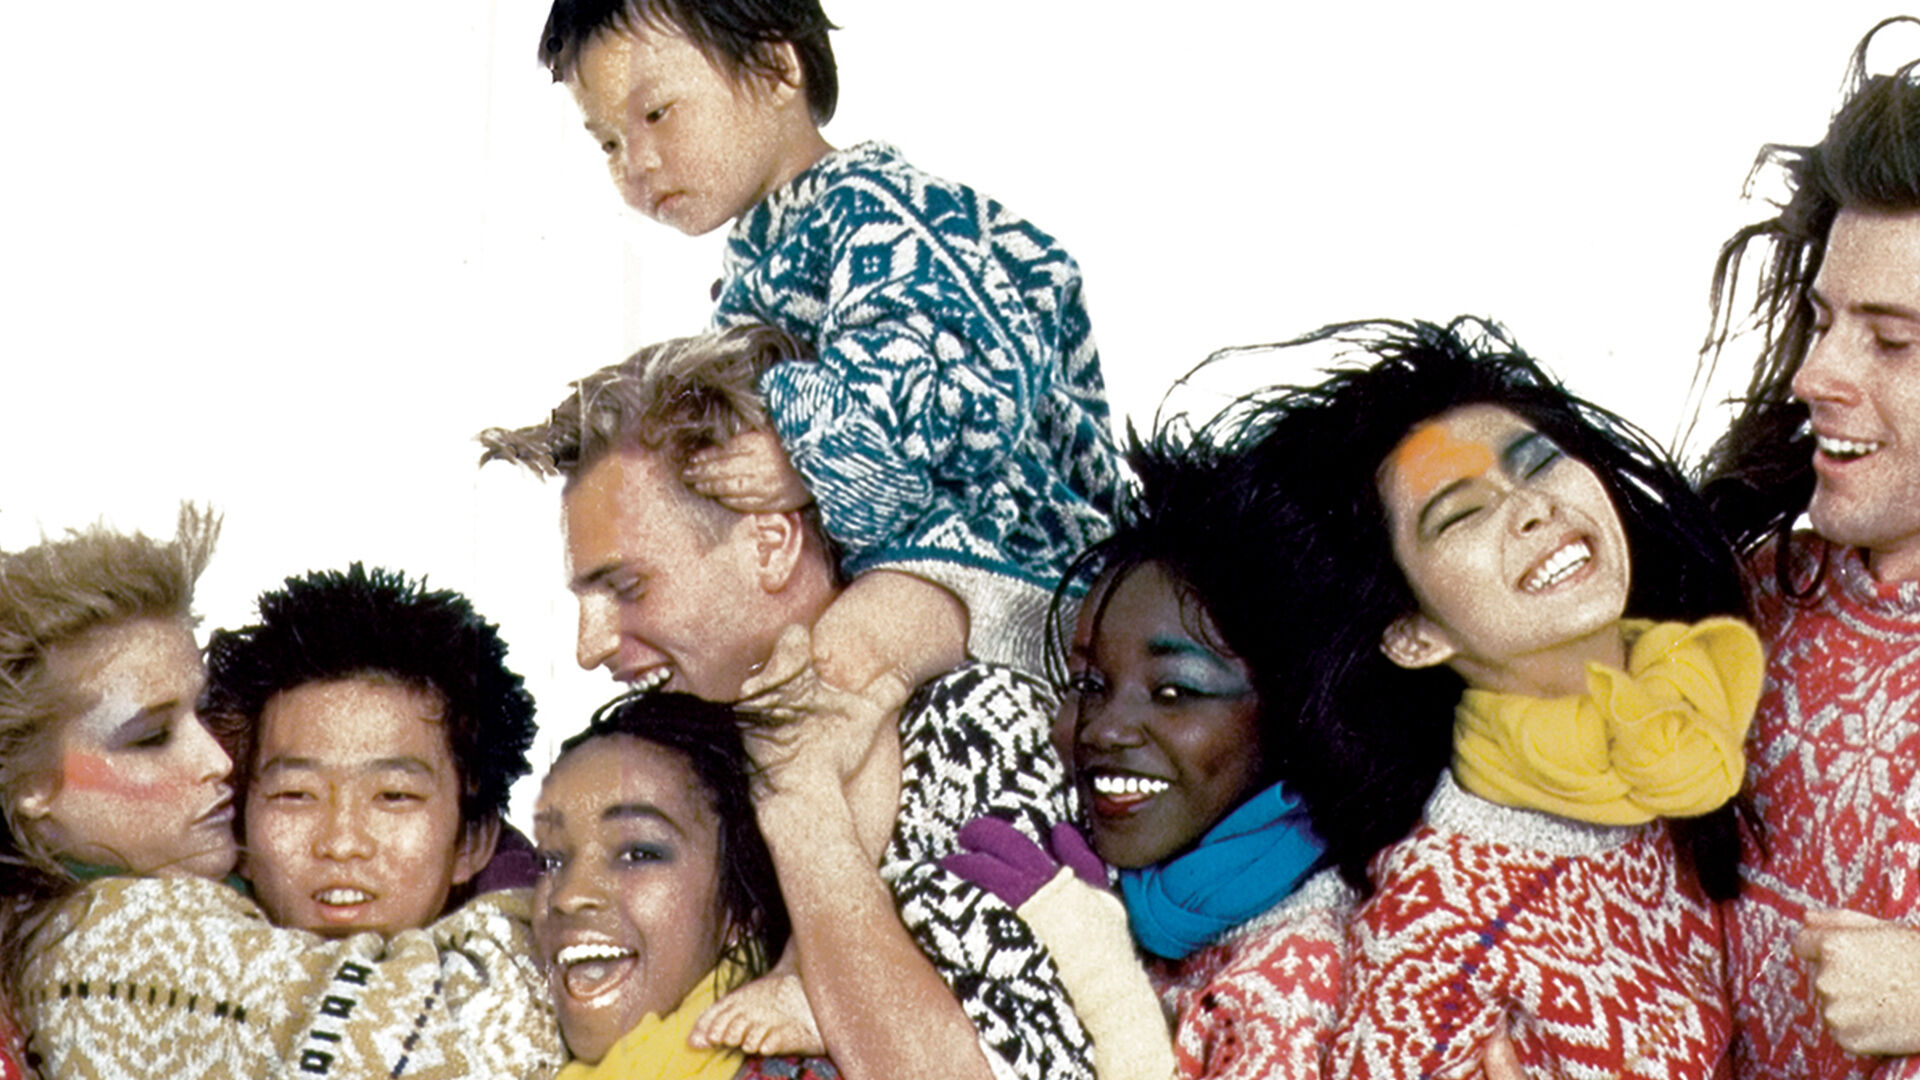 Photographie pour la campagne "toutes les couleurs du monde" de Benetton représentant des personnes de couleurs différentes et de cultures différentes ensemble et heureuses.